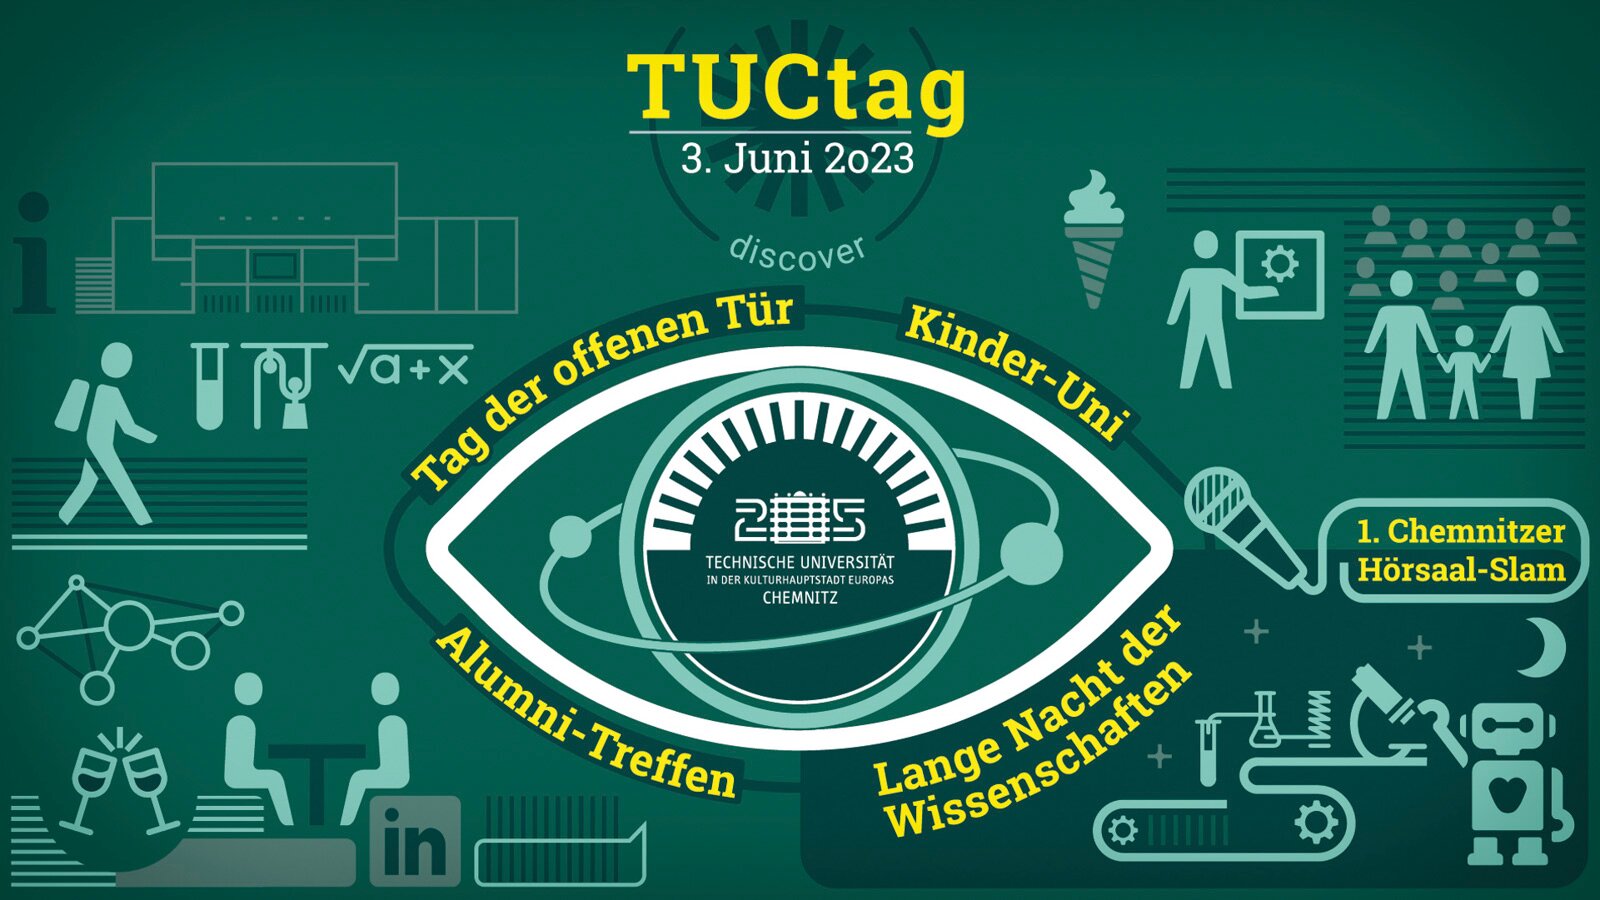 Mehrere Icons symbolisieren die verschiedenen Veranstaltungsformate, in der Bildmitte ist ein Auge zu sehen, in dessen Pupille das Logo der TU Chemnitz steht.